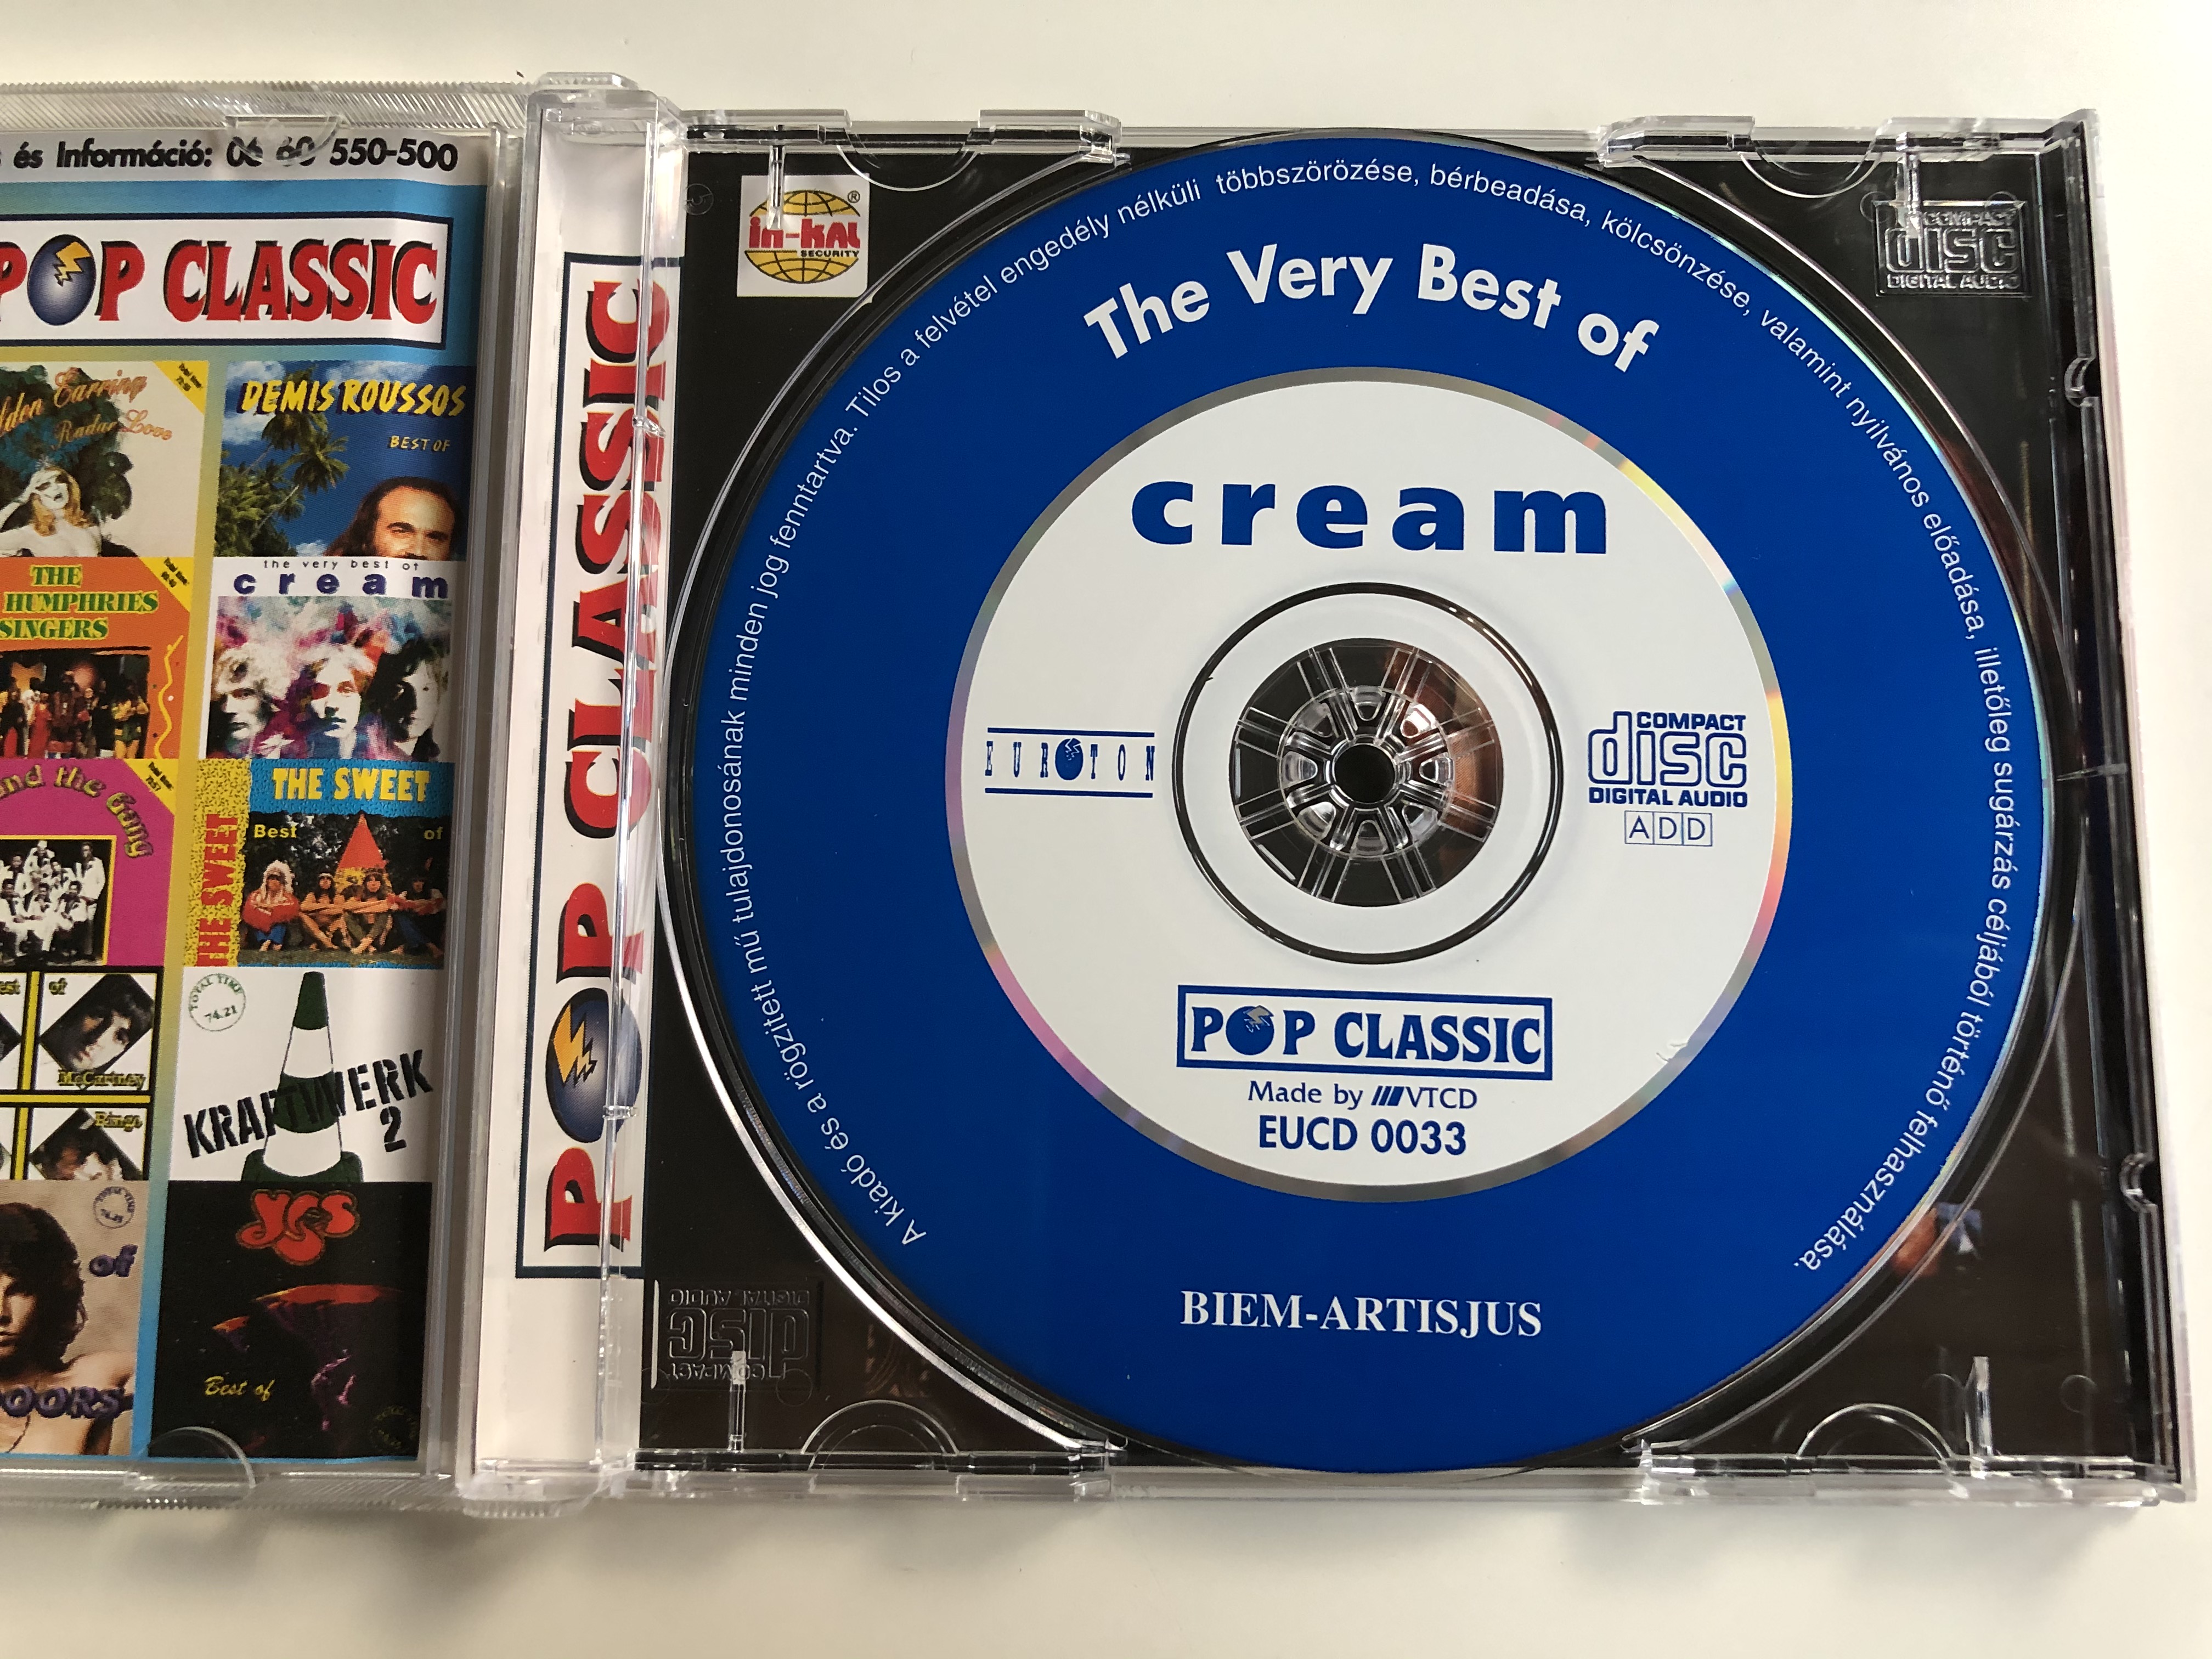 the-very-best-of-cream-ginger-baker-jack-bruce-eric-clapton-pop-classic-euroton-audio-cd-eucd-0033-2-.jpg